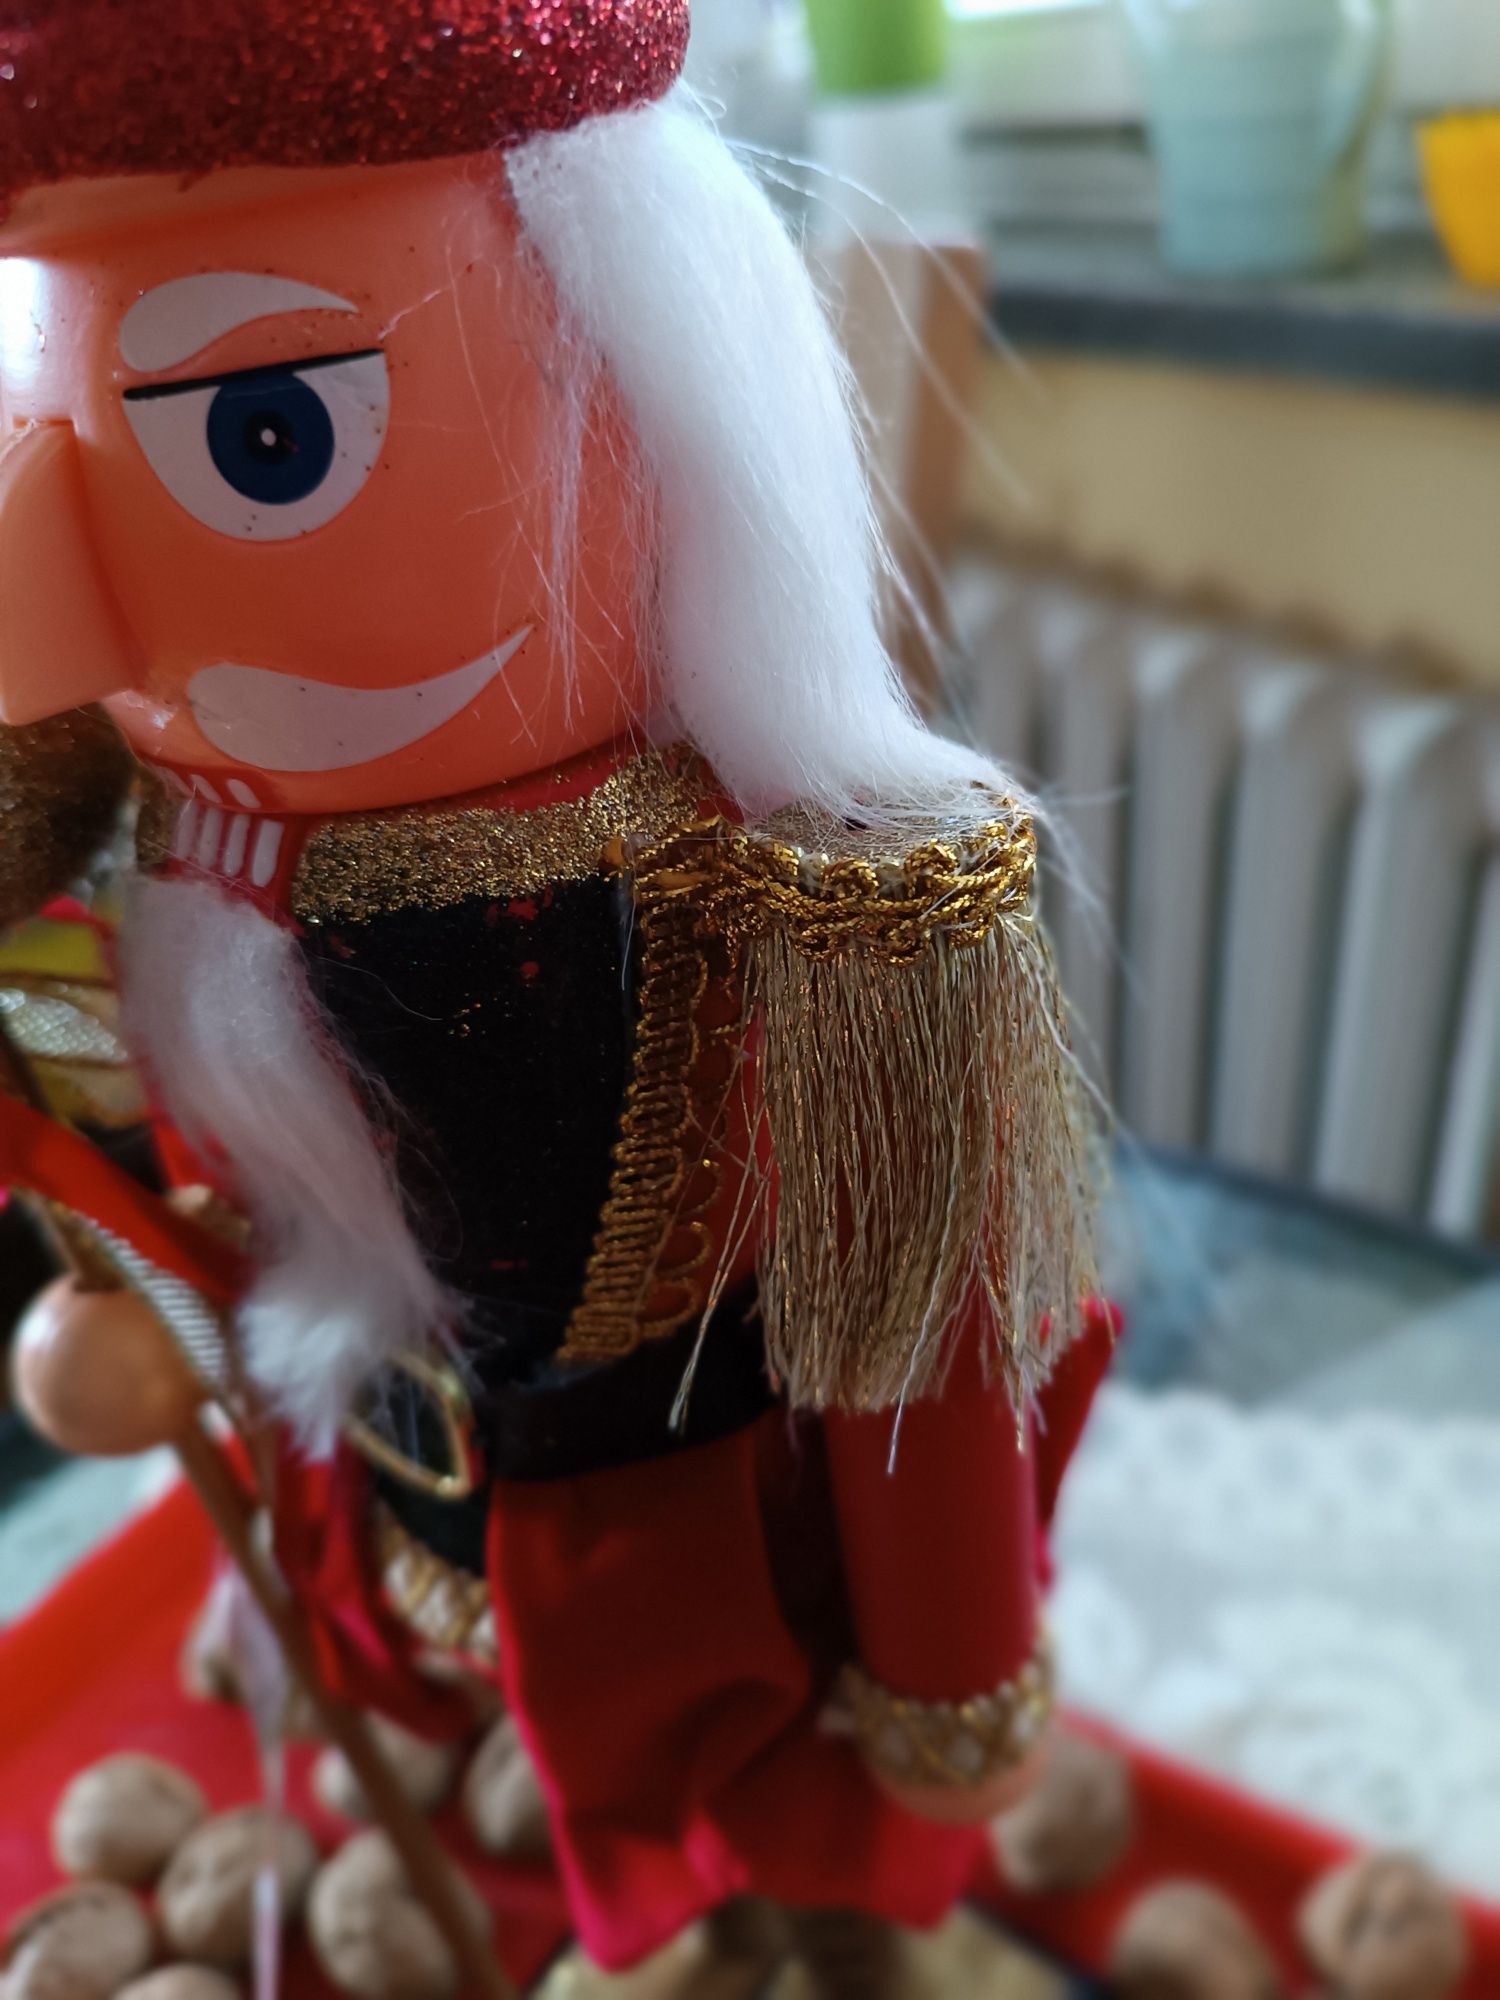 Figurka Dziadek do Orzechów 38 cm świąteczna na Boże Narodzenie